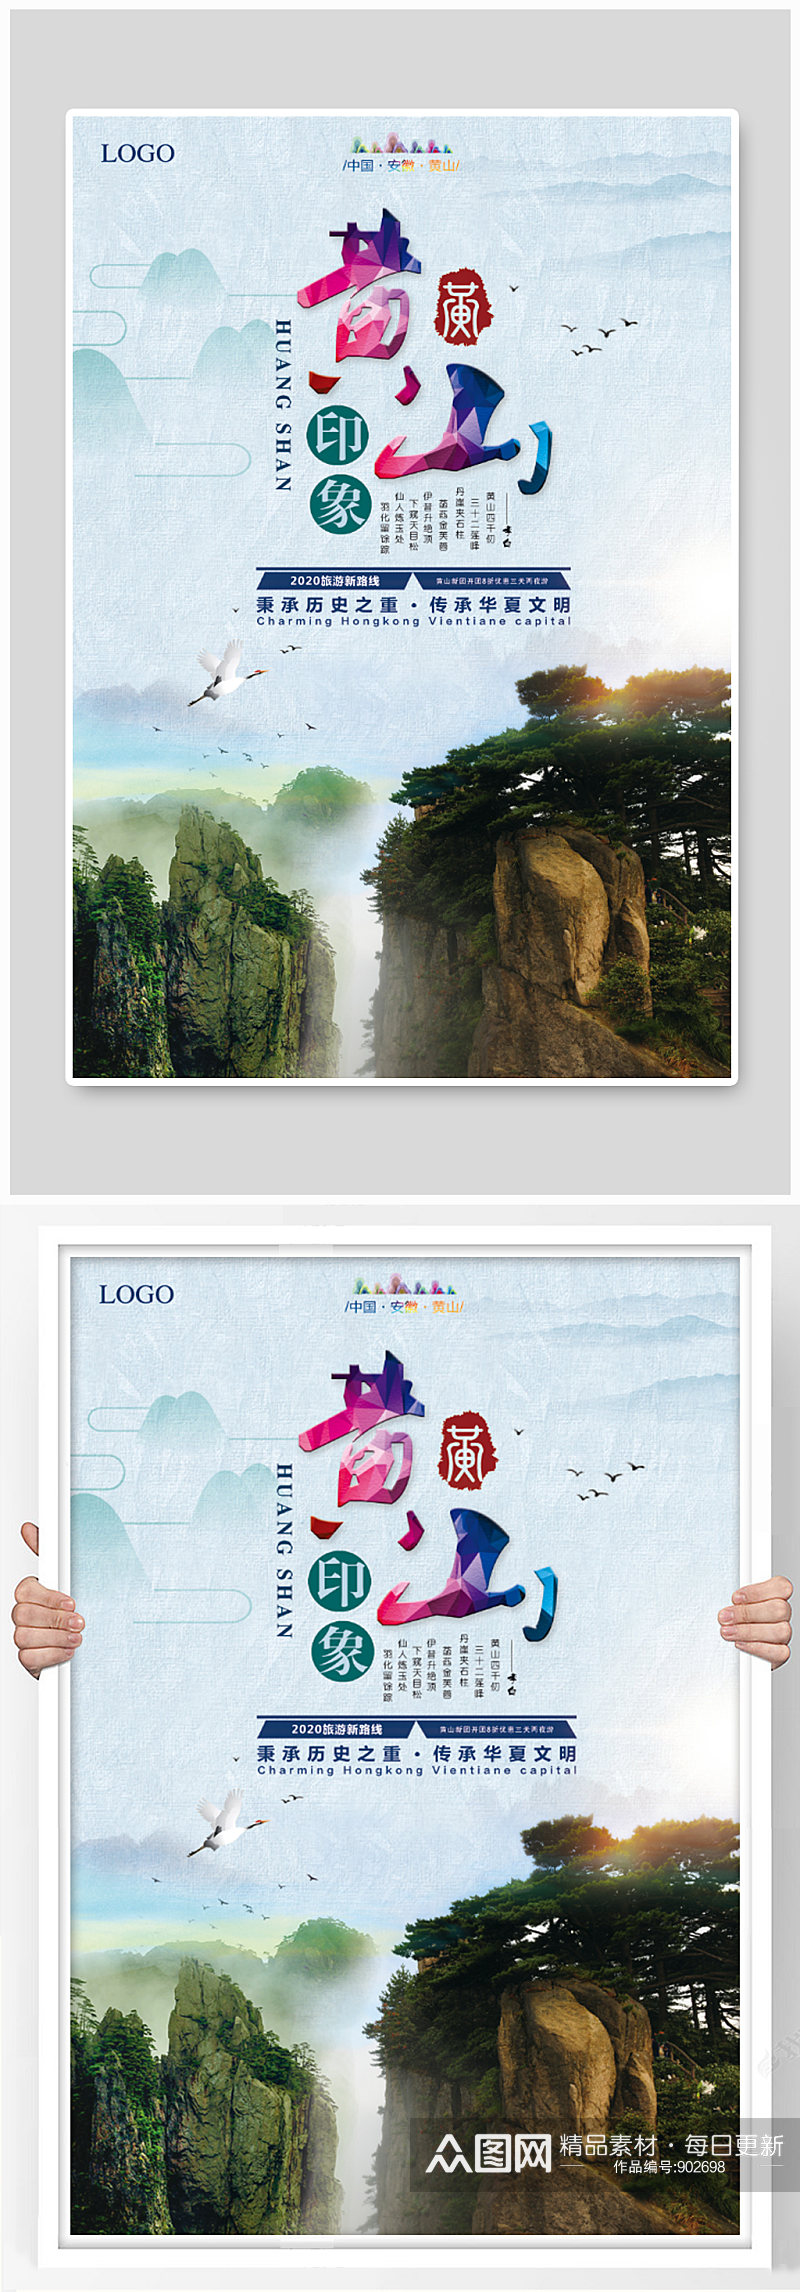 安徽黄山印象旅游海报设计素材